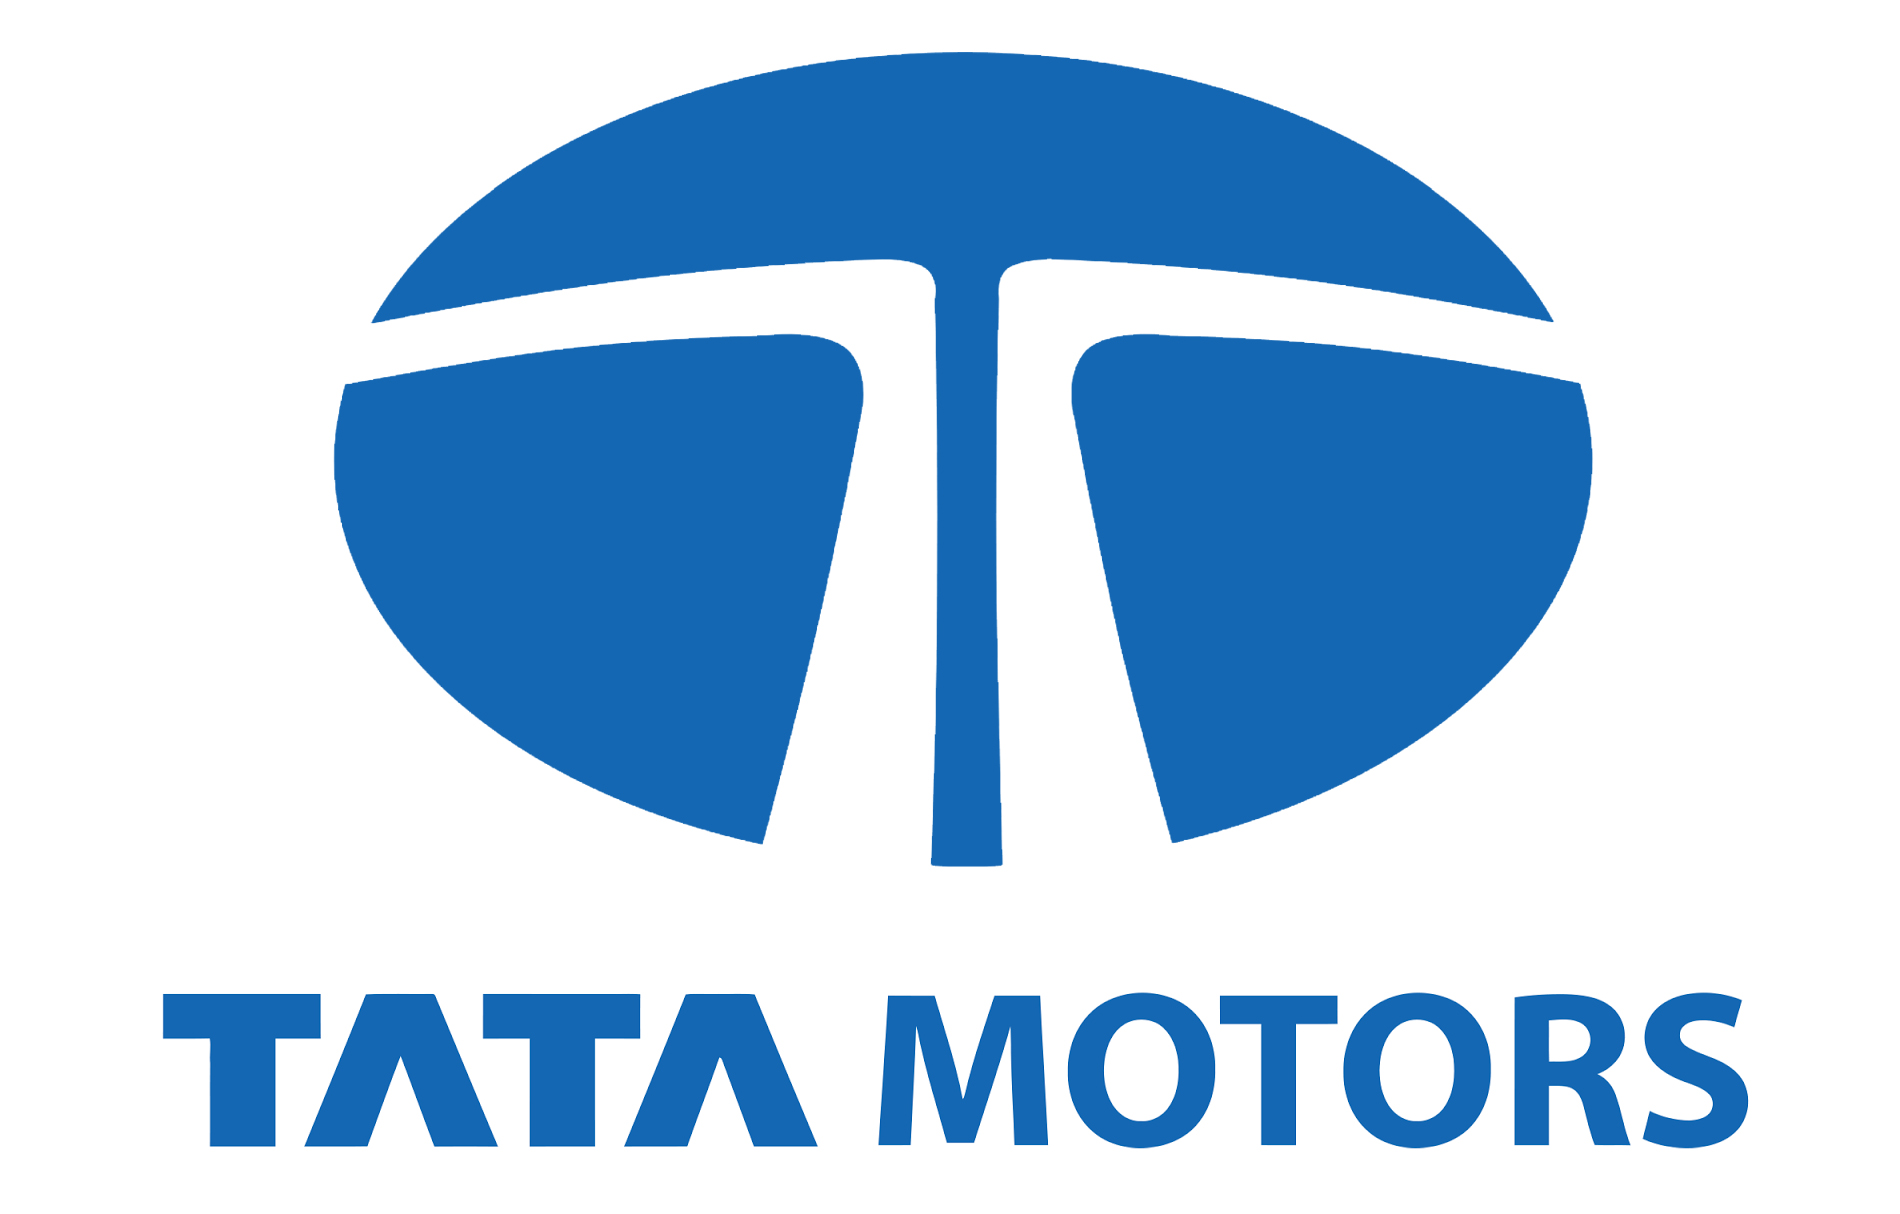 Tata Motors Cars Service Centre - Brijlax Motors - Logo